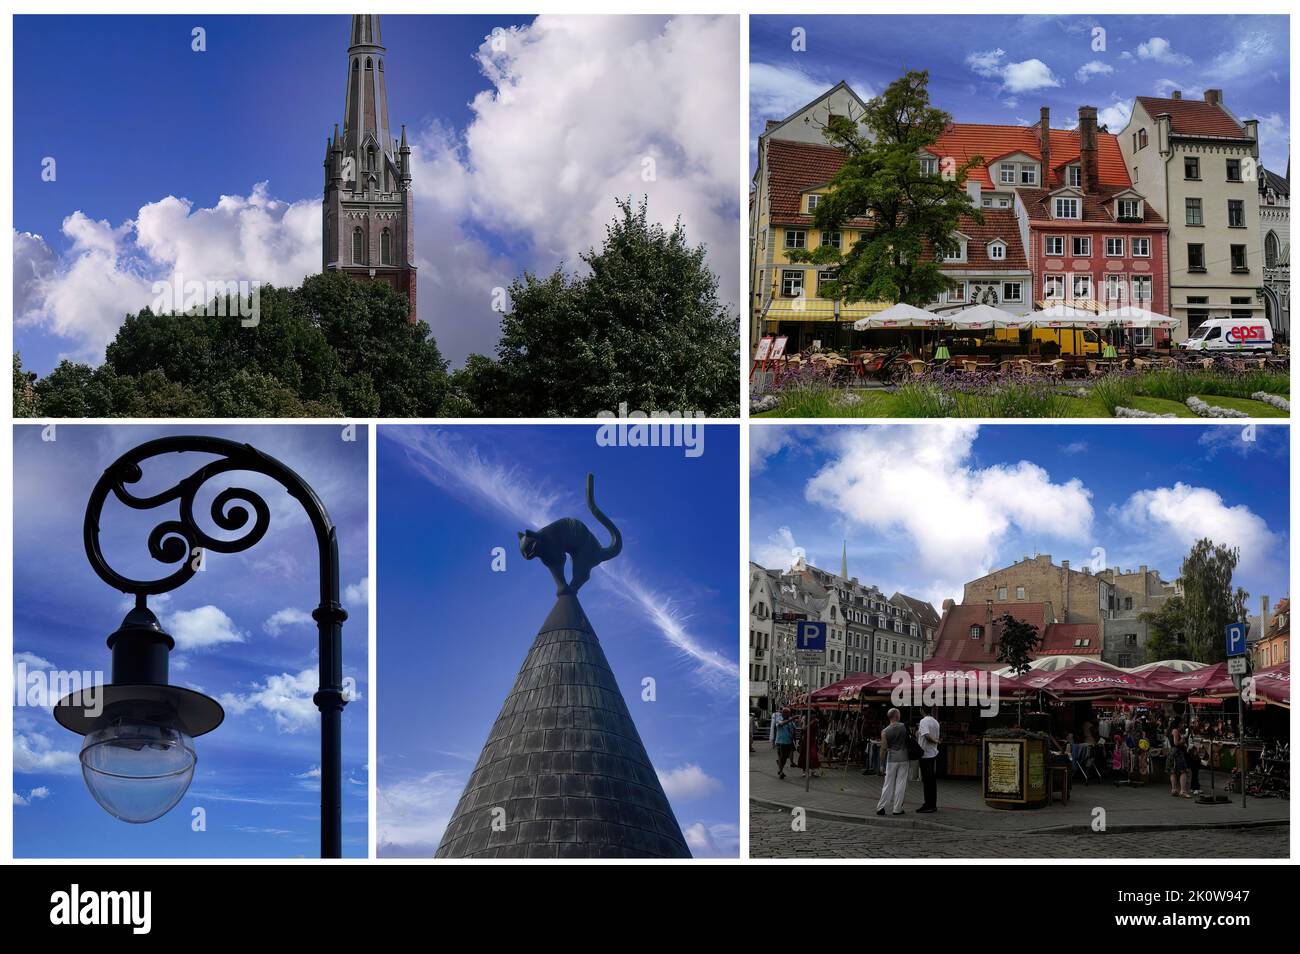 La belle vieille ville de Riga (Lettonie) avec ses bâtiments caractéristiques et ses ruelles pavées. Depuis 1997 site du patrimoine mondial de l'UNESCO (2) Banque D'Images